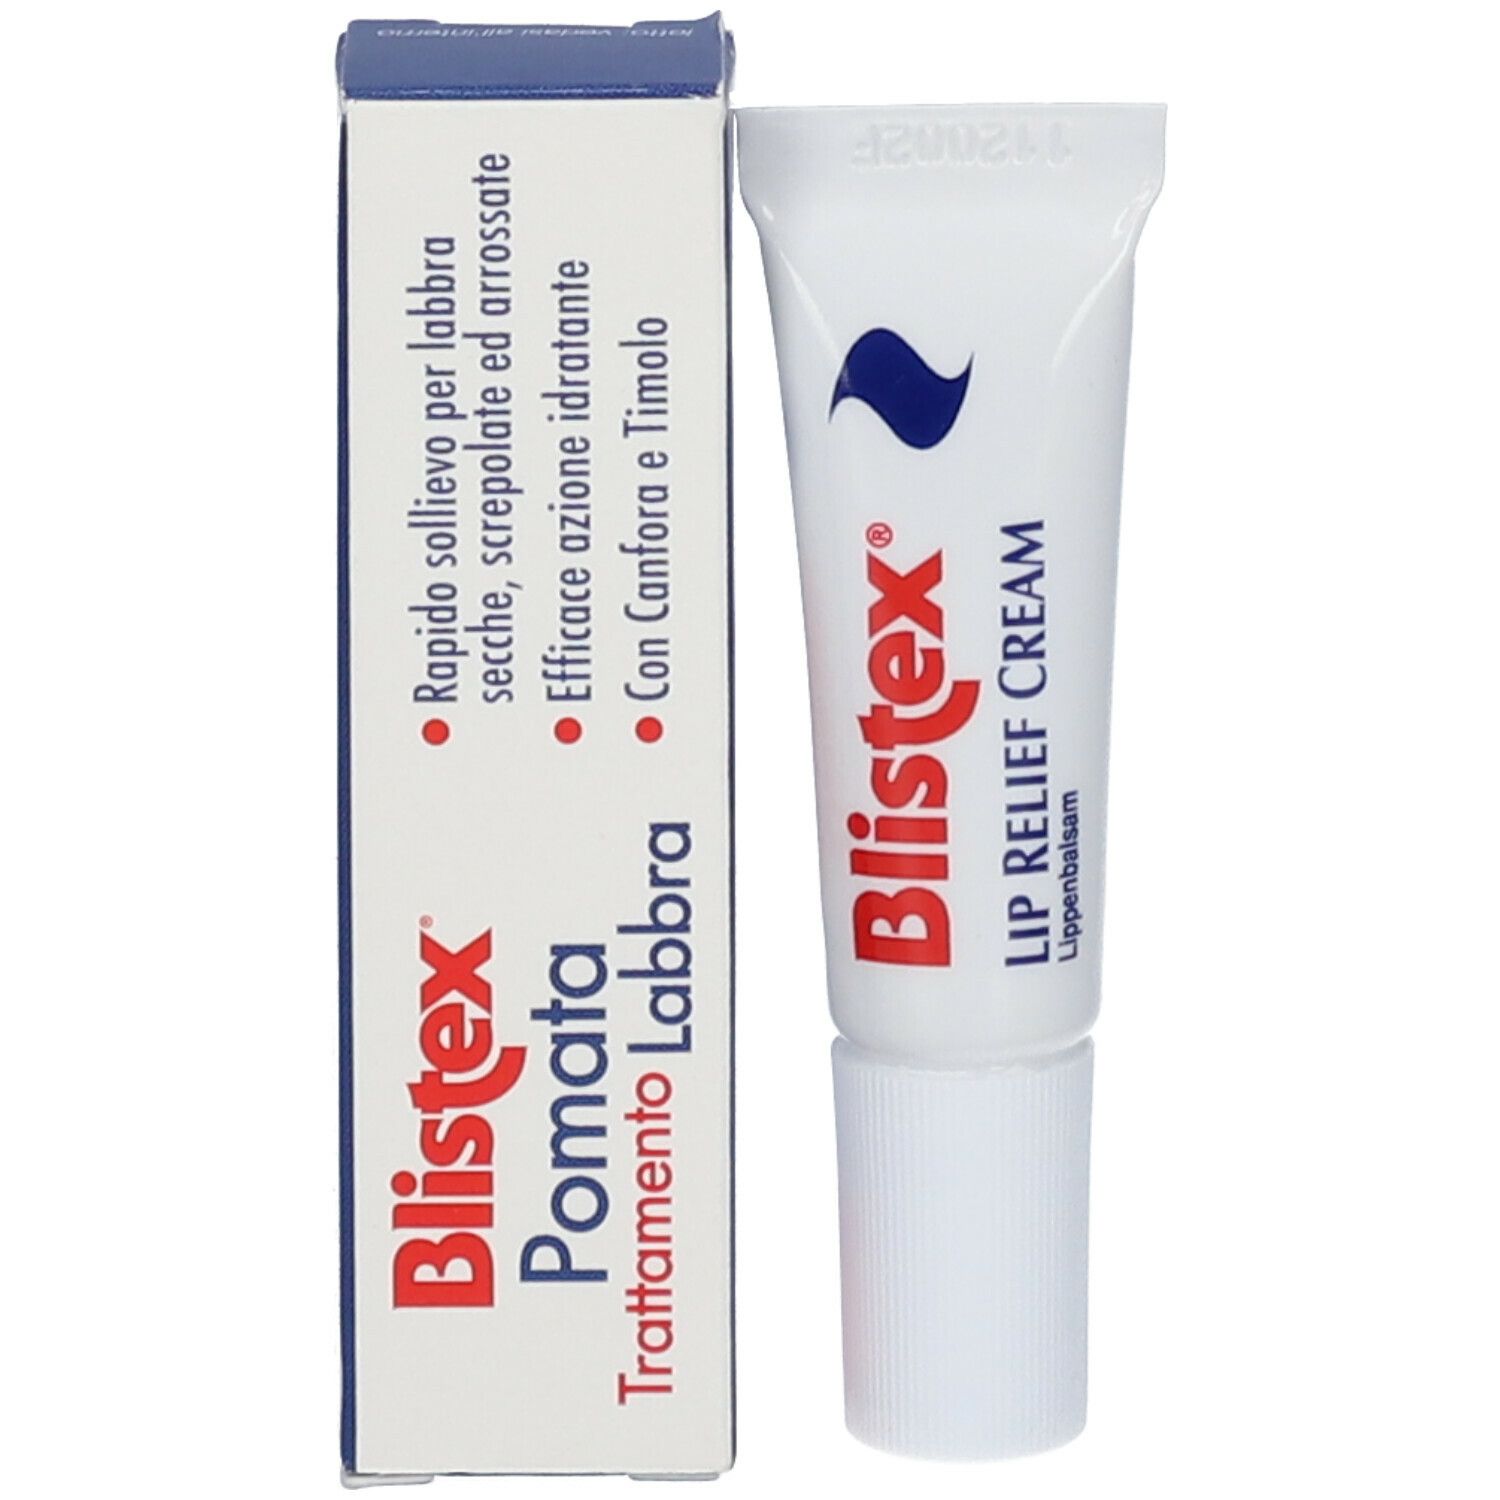 Blistex® Pomata Trattamento Labbra